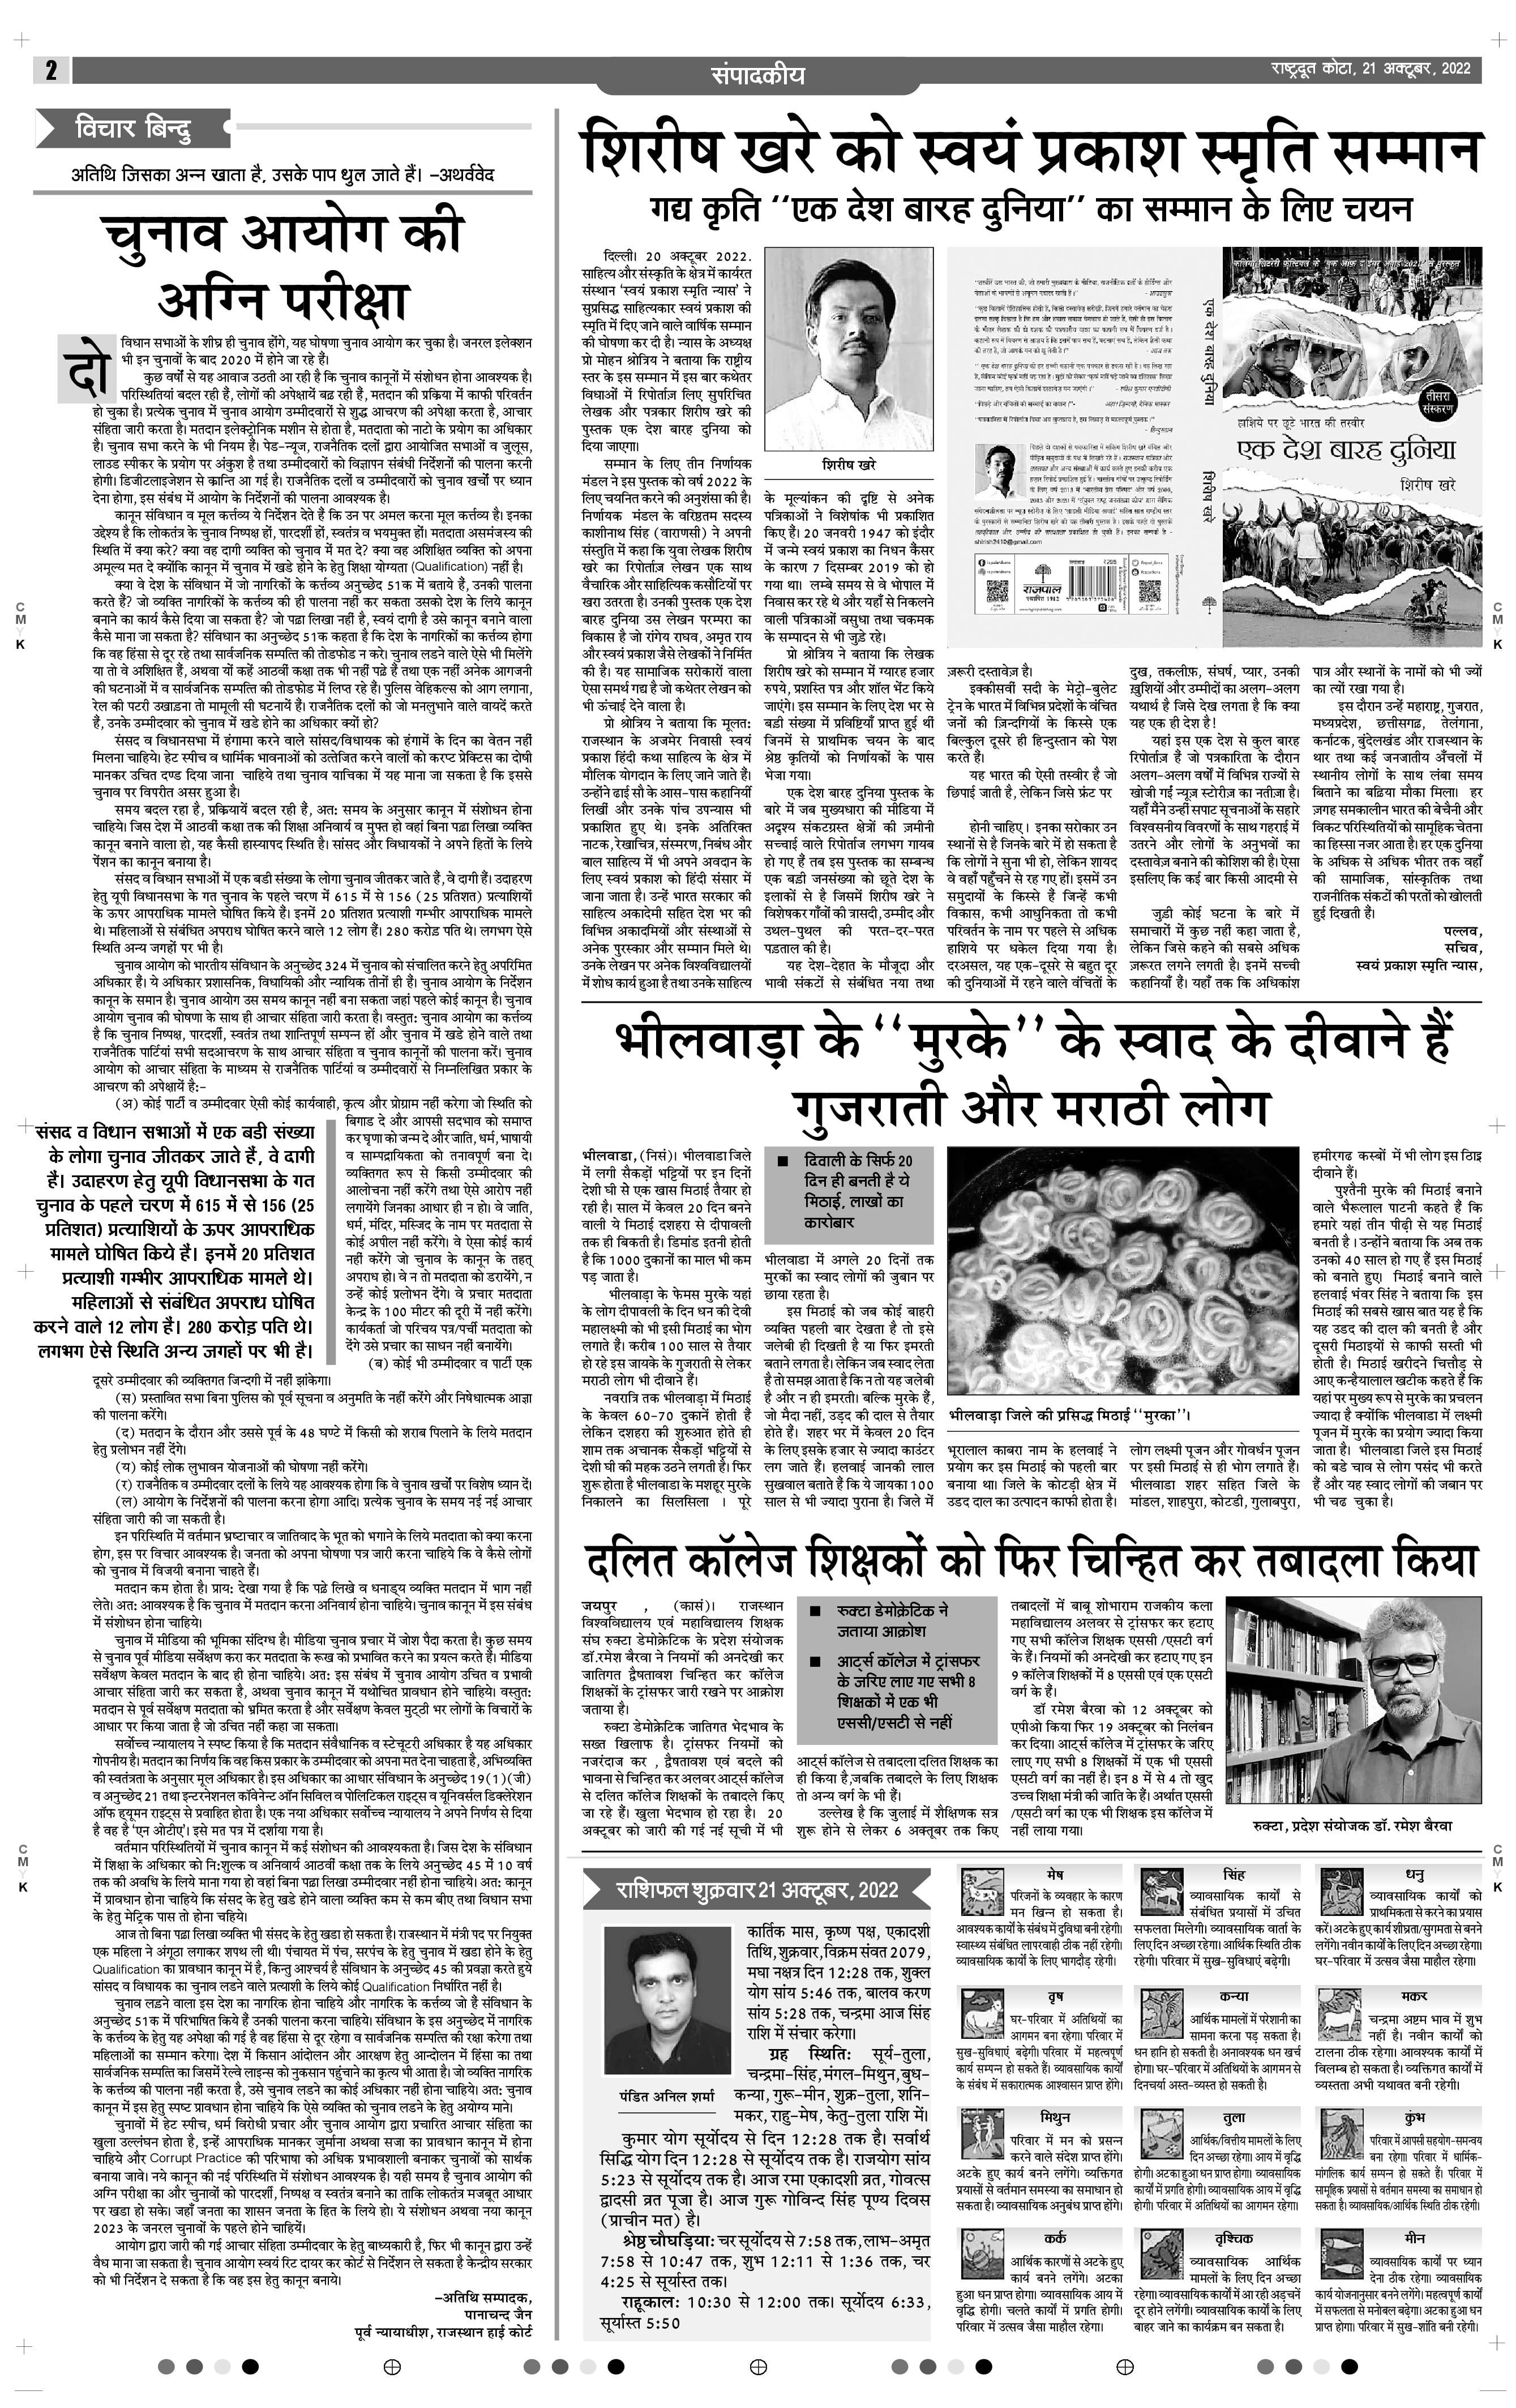 Rajasthan Top 5 News: राजस्थान के विधायक का भाई नकल करवाते गिरफ्तार, पढ़ें  अब तक की 5 बड़ी खबरें | Rajasthan Top 5 News, Today 26 July 2022 | Patrika  News